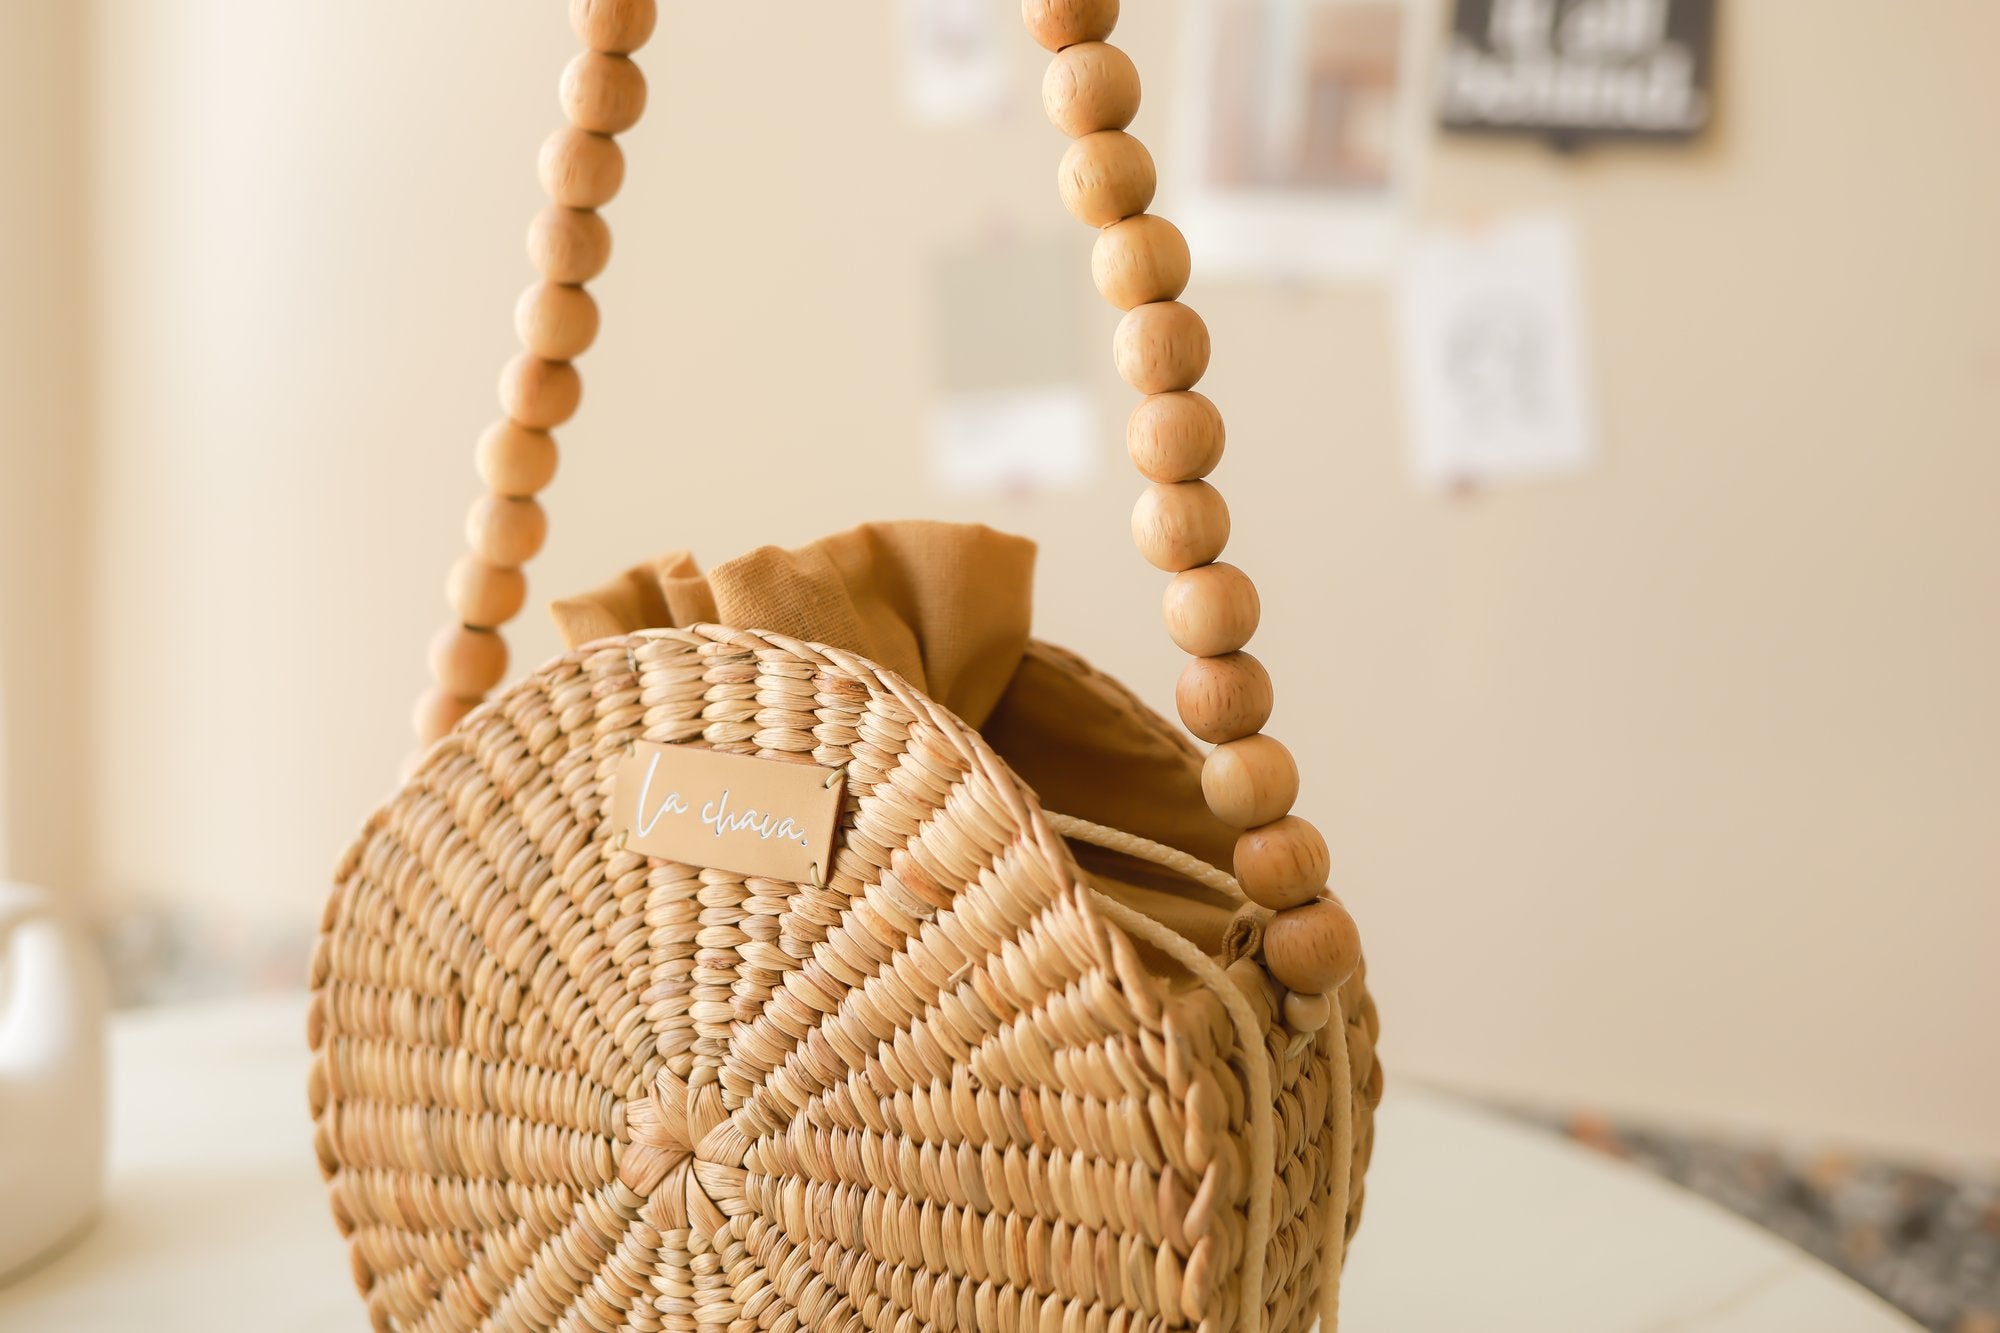 Rattan Casa Basket Bag – take heart shop